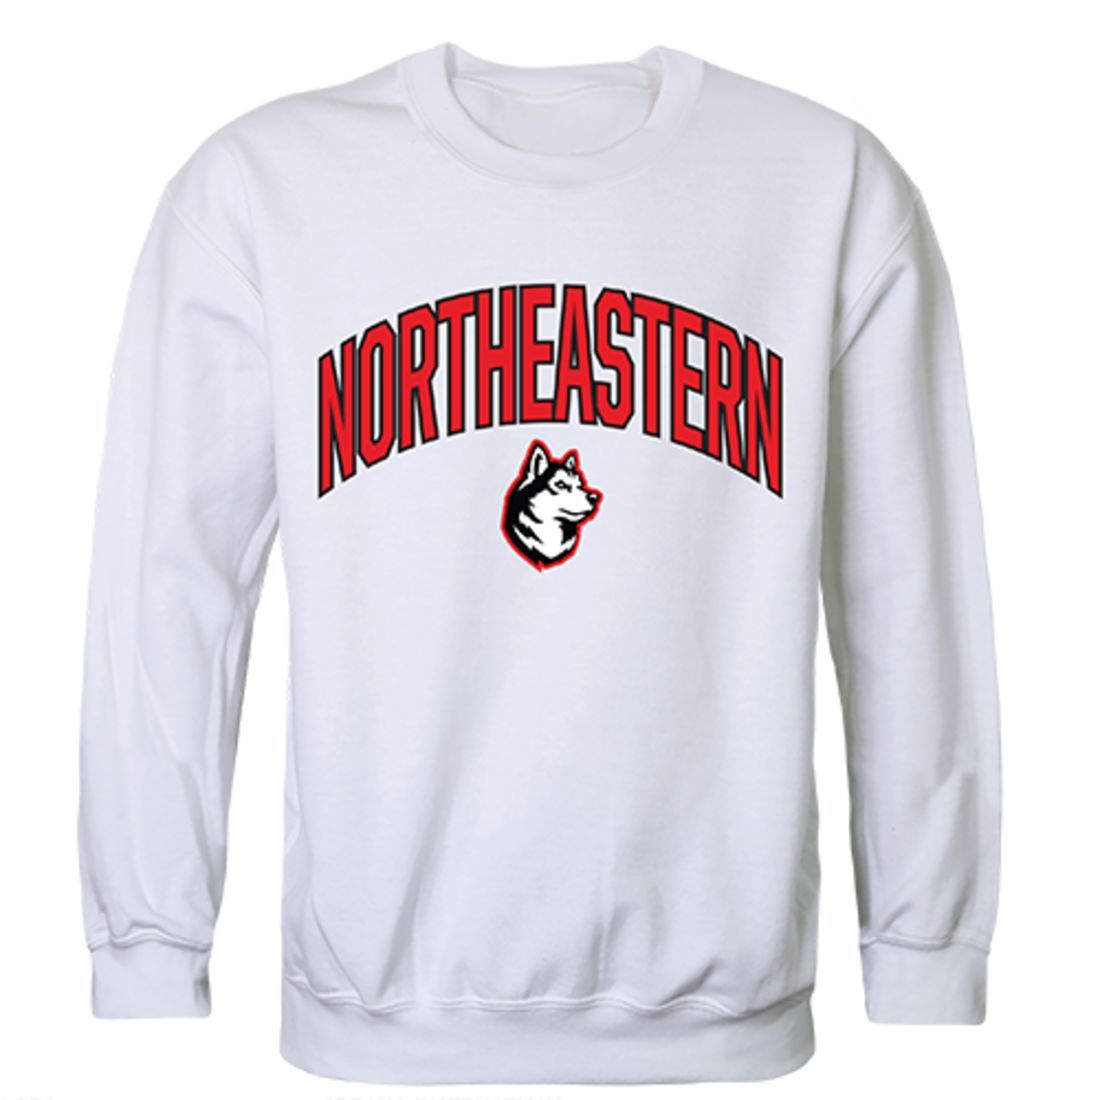 Northeastern University Campus Crewneck Pullover Sweatshirt Sweater White-Campus-Wardrobe